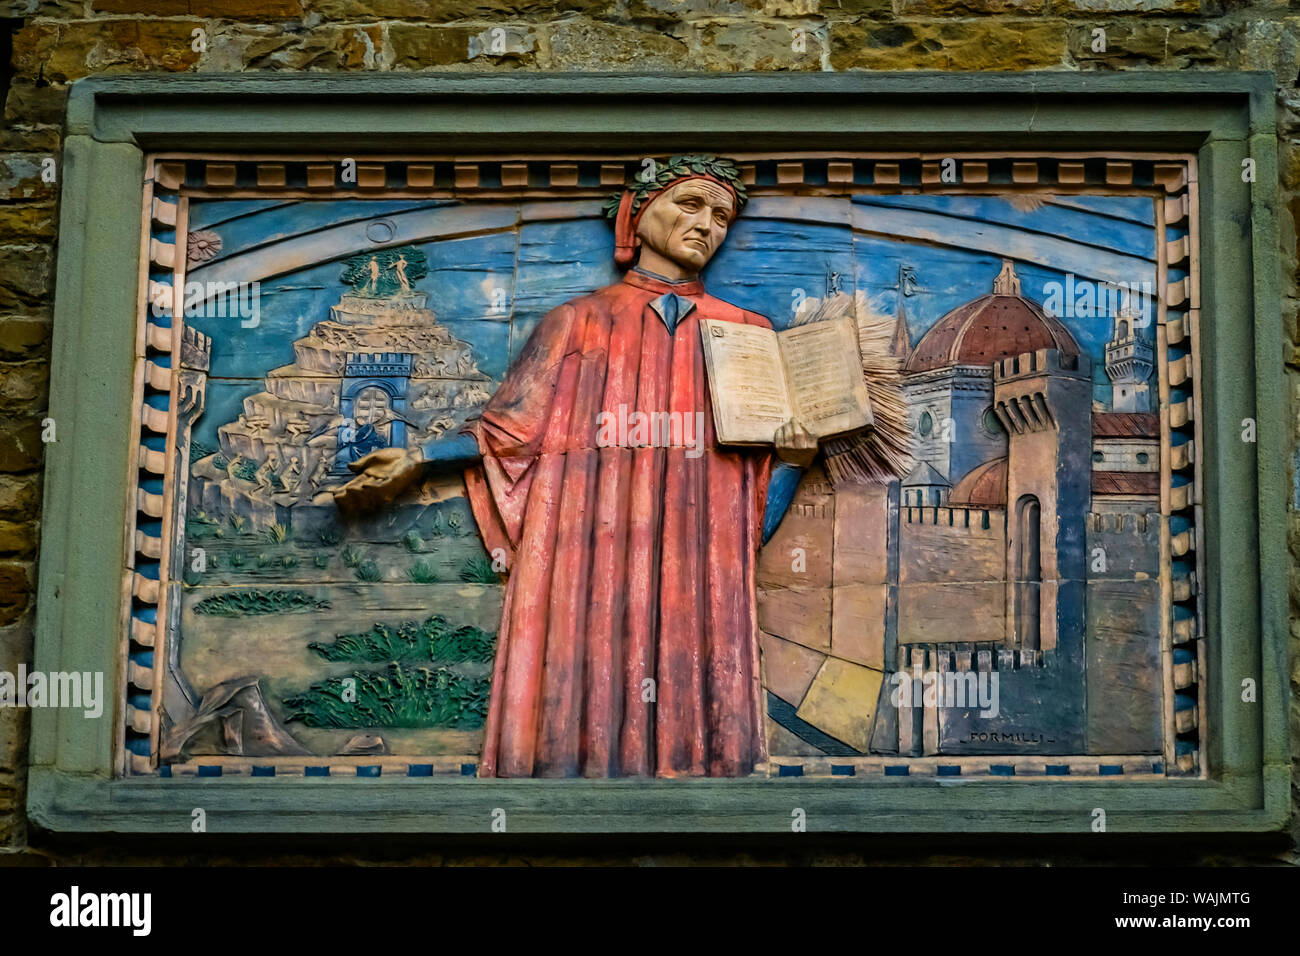 Societa Dante Alighieri Cultural Society signe. Domenico di Michelino Dante Divine Comédie peinture, Florence, Italie. Peinture réalisée à 1465 Banque D'Images